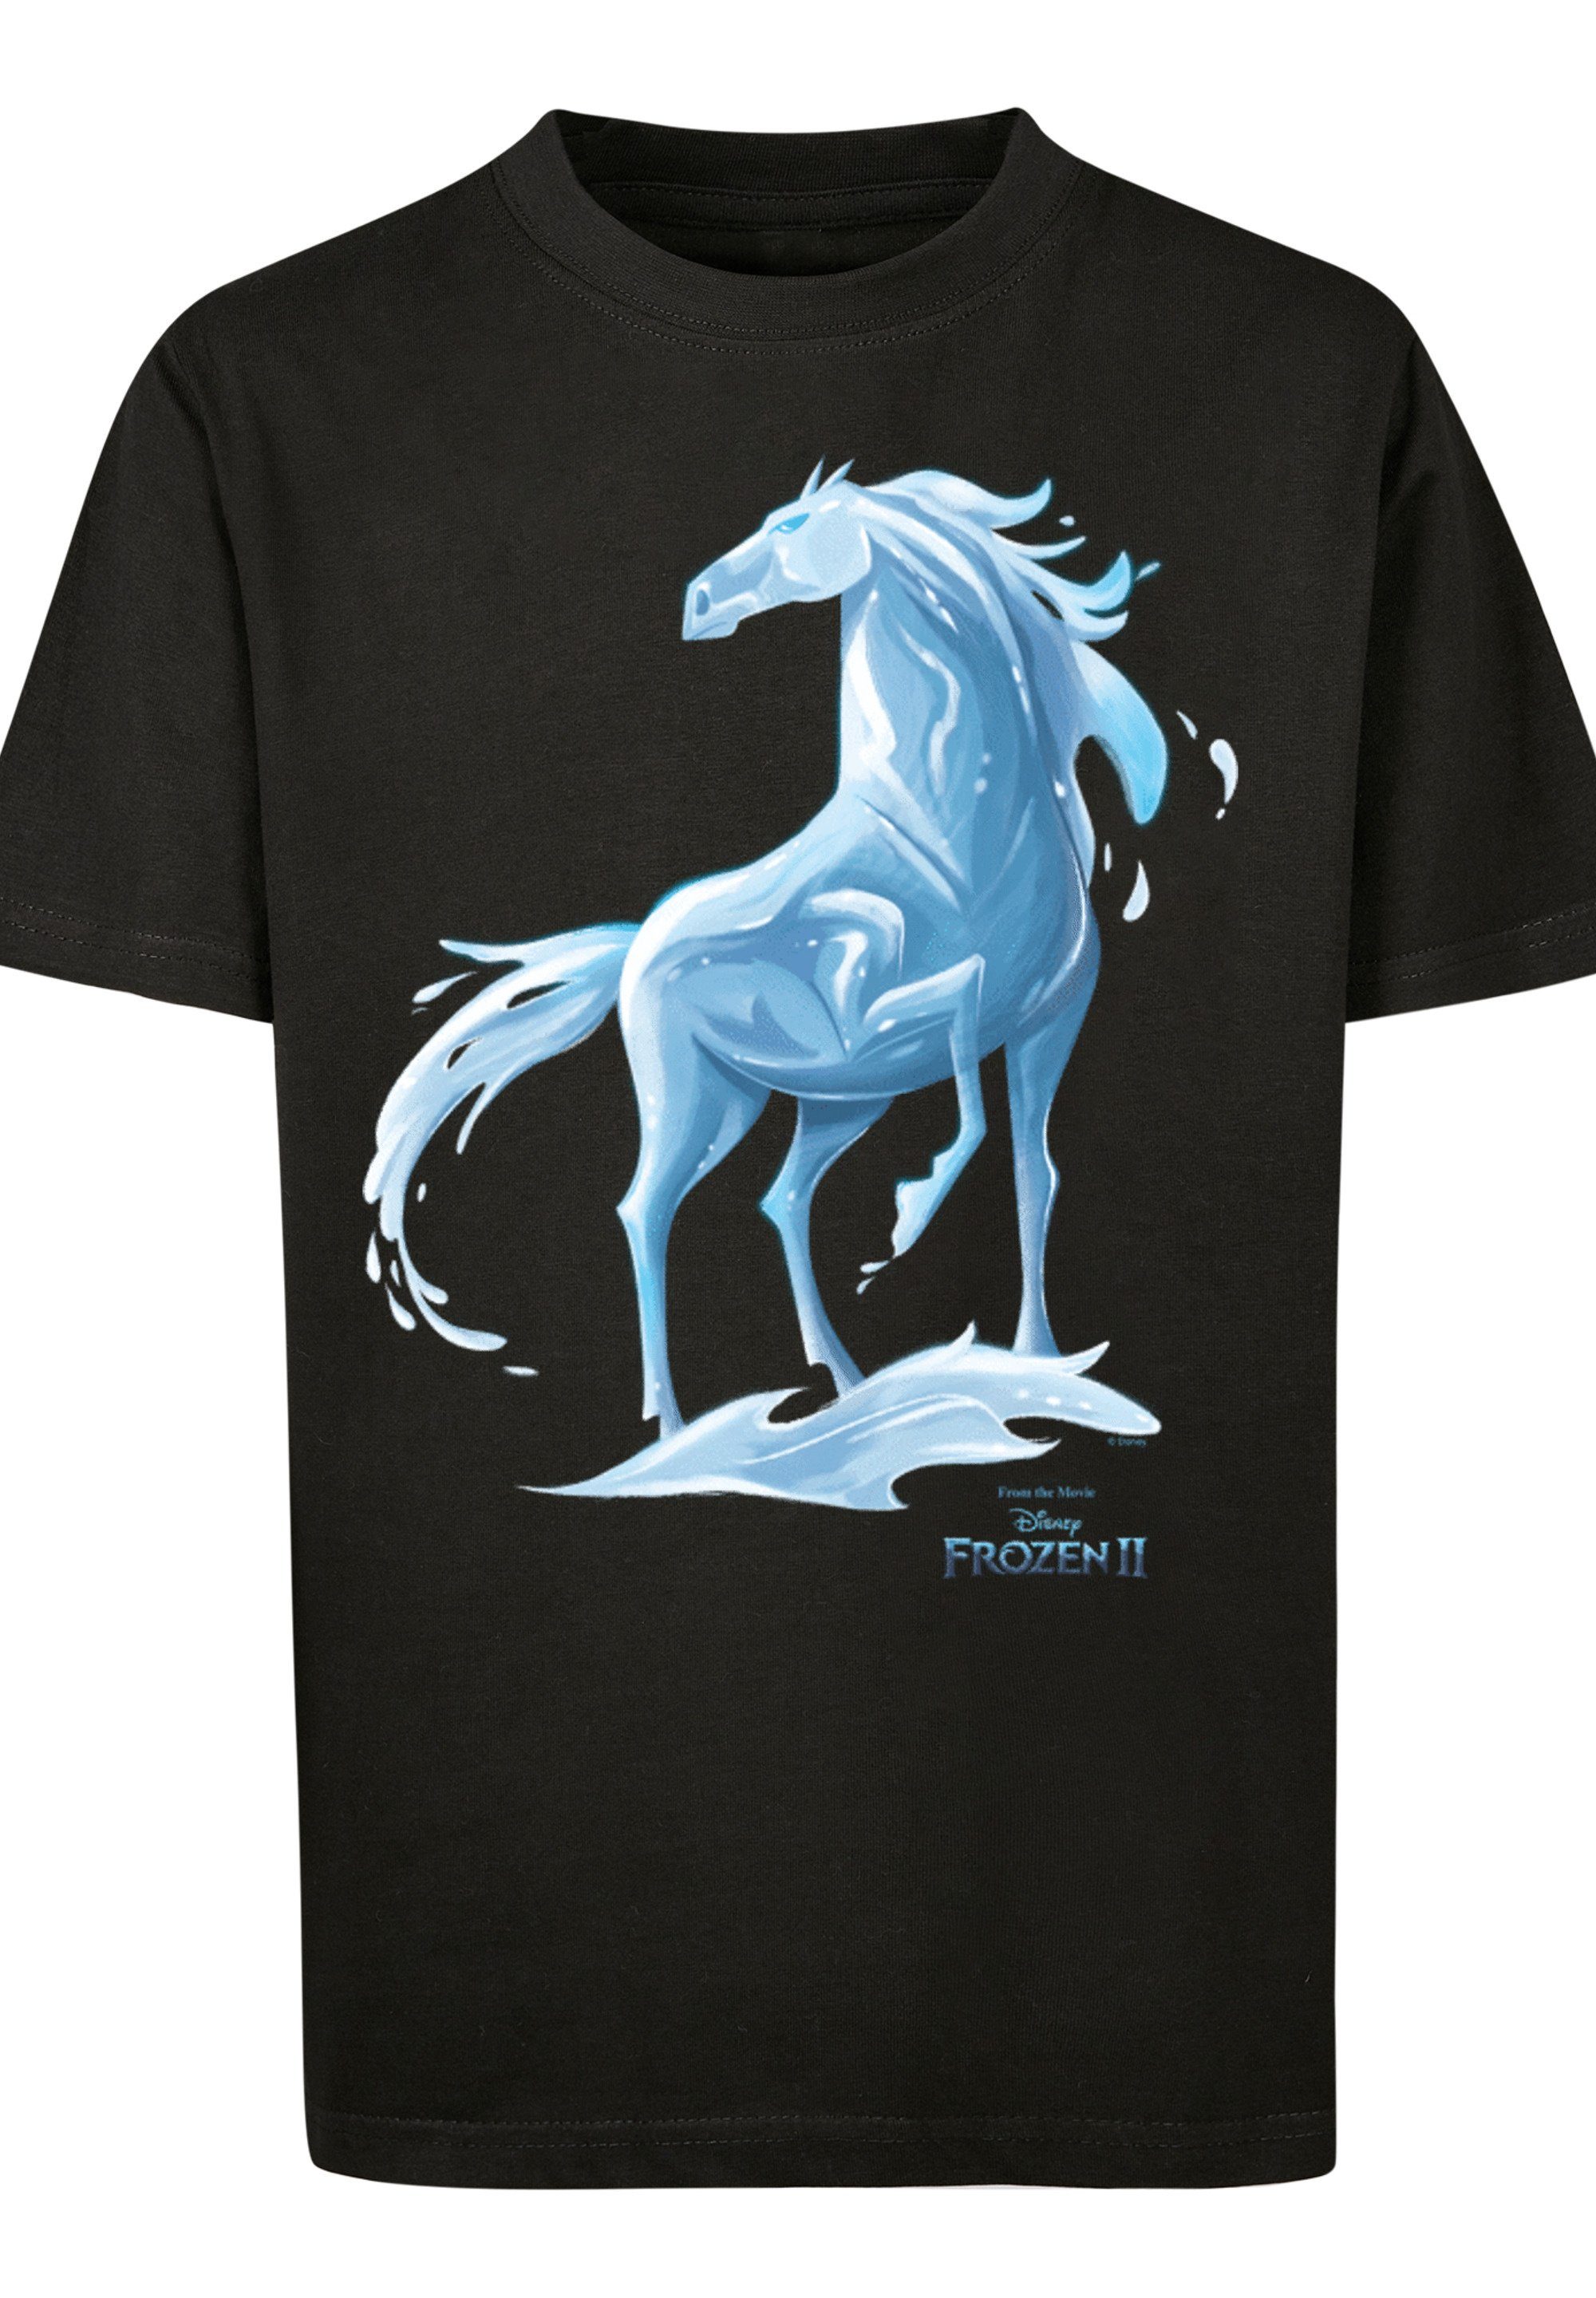 Unisex Kinder,Premium Wassergeist Nokk Disney Pferd Frozen T-Shirt F4NT4STIC 2 Merch,Jungen,Mädchen,Bedruckt